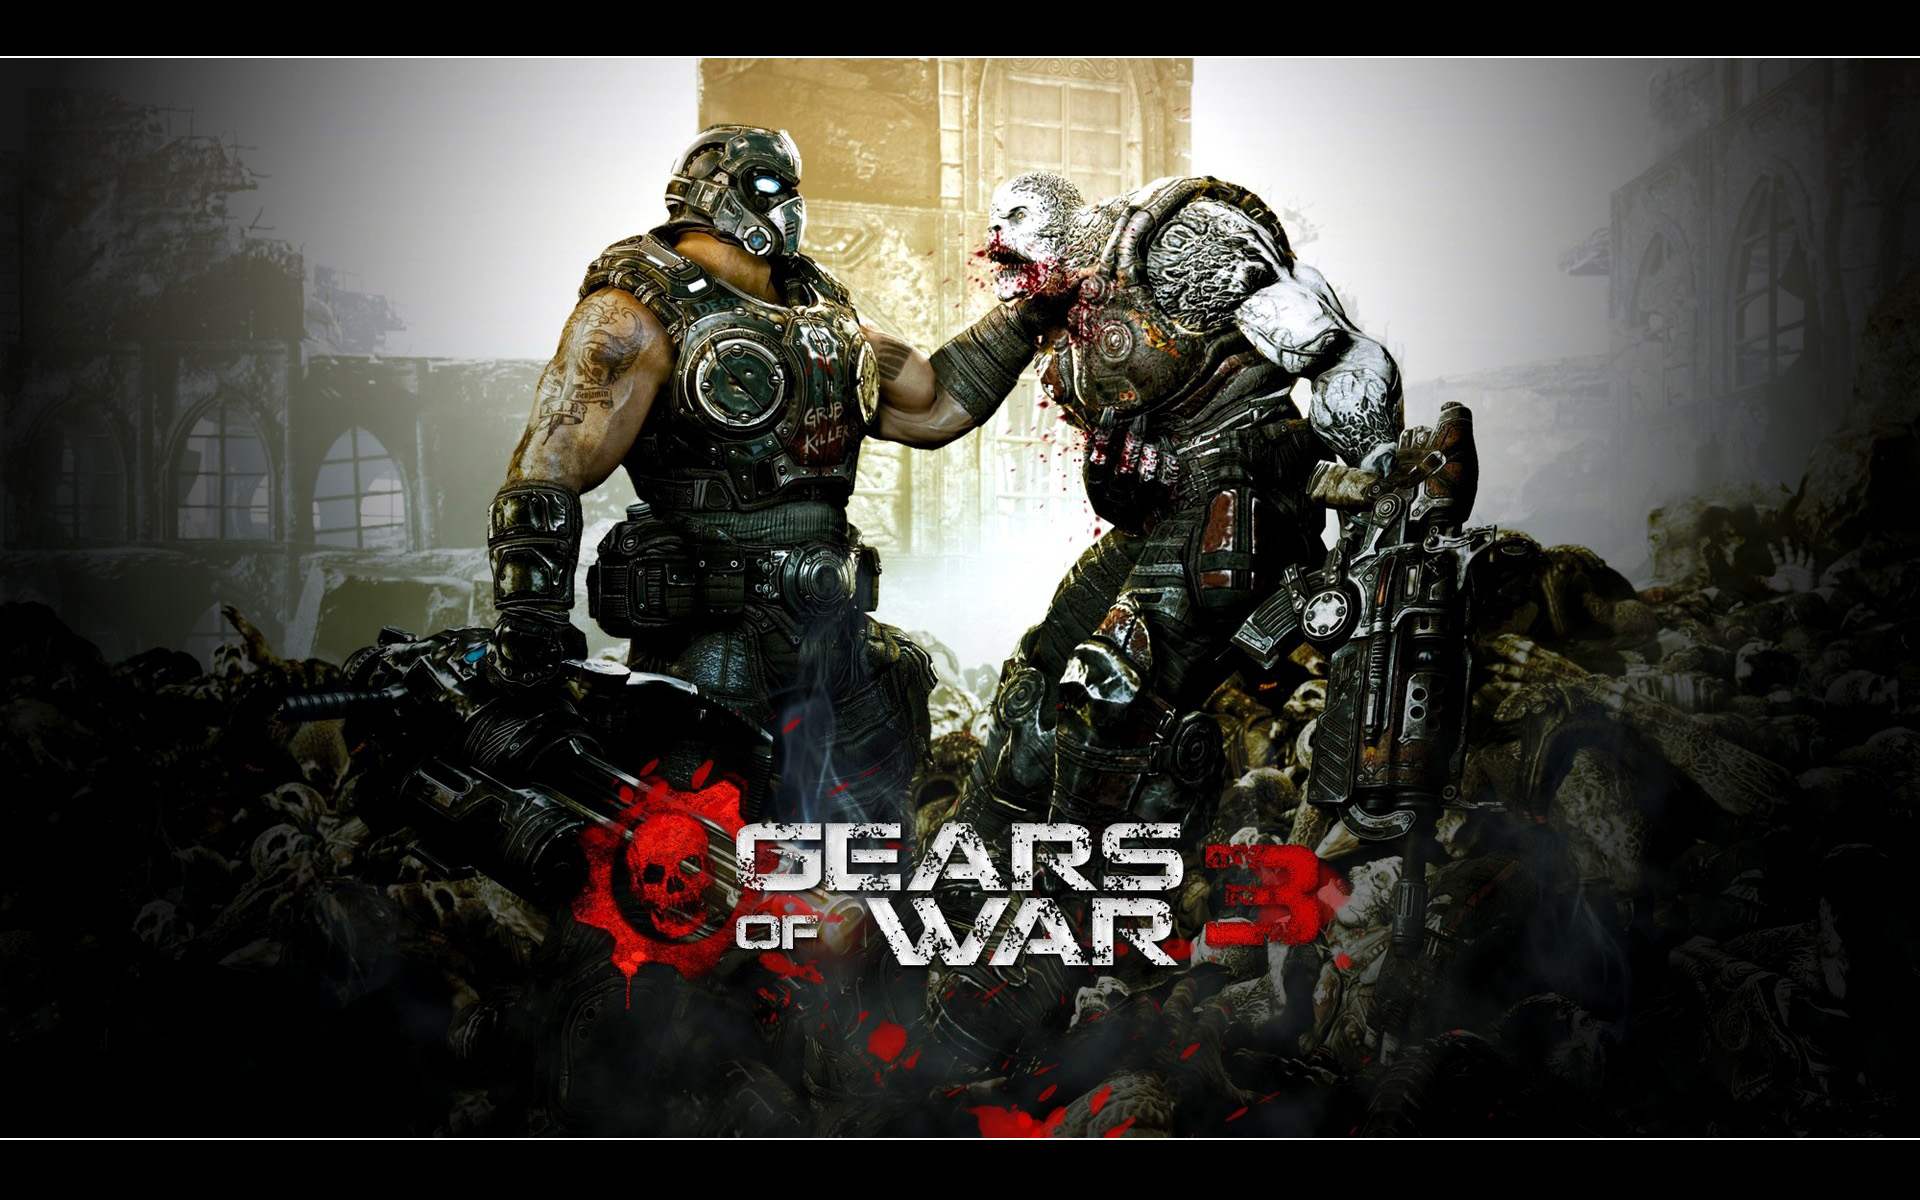 Gears Of War 3 Wallpapers 6676 Hd Wallpapers in Games   Imagescicom